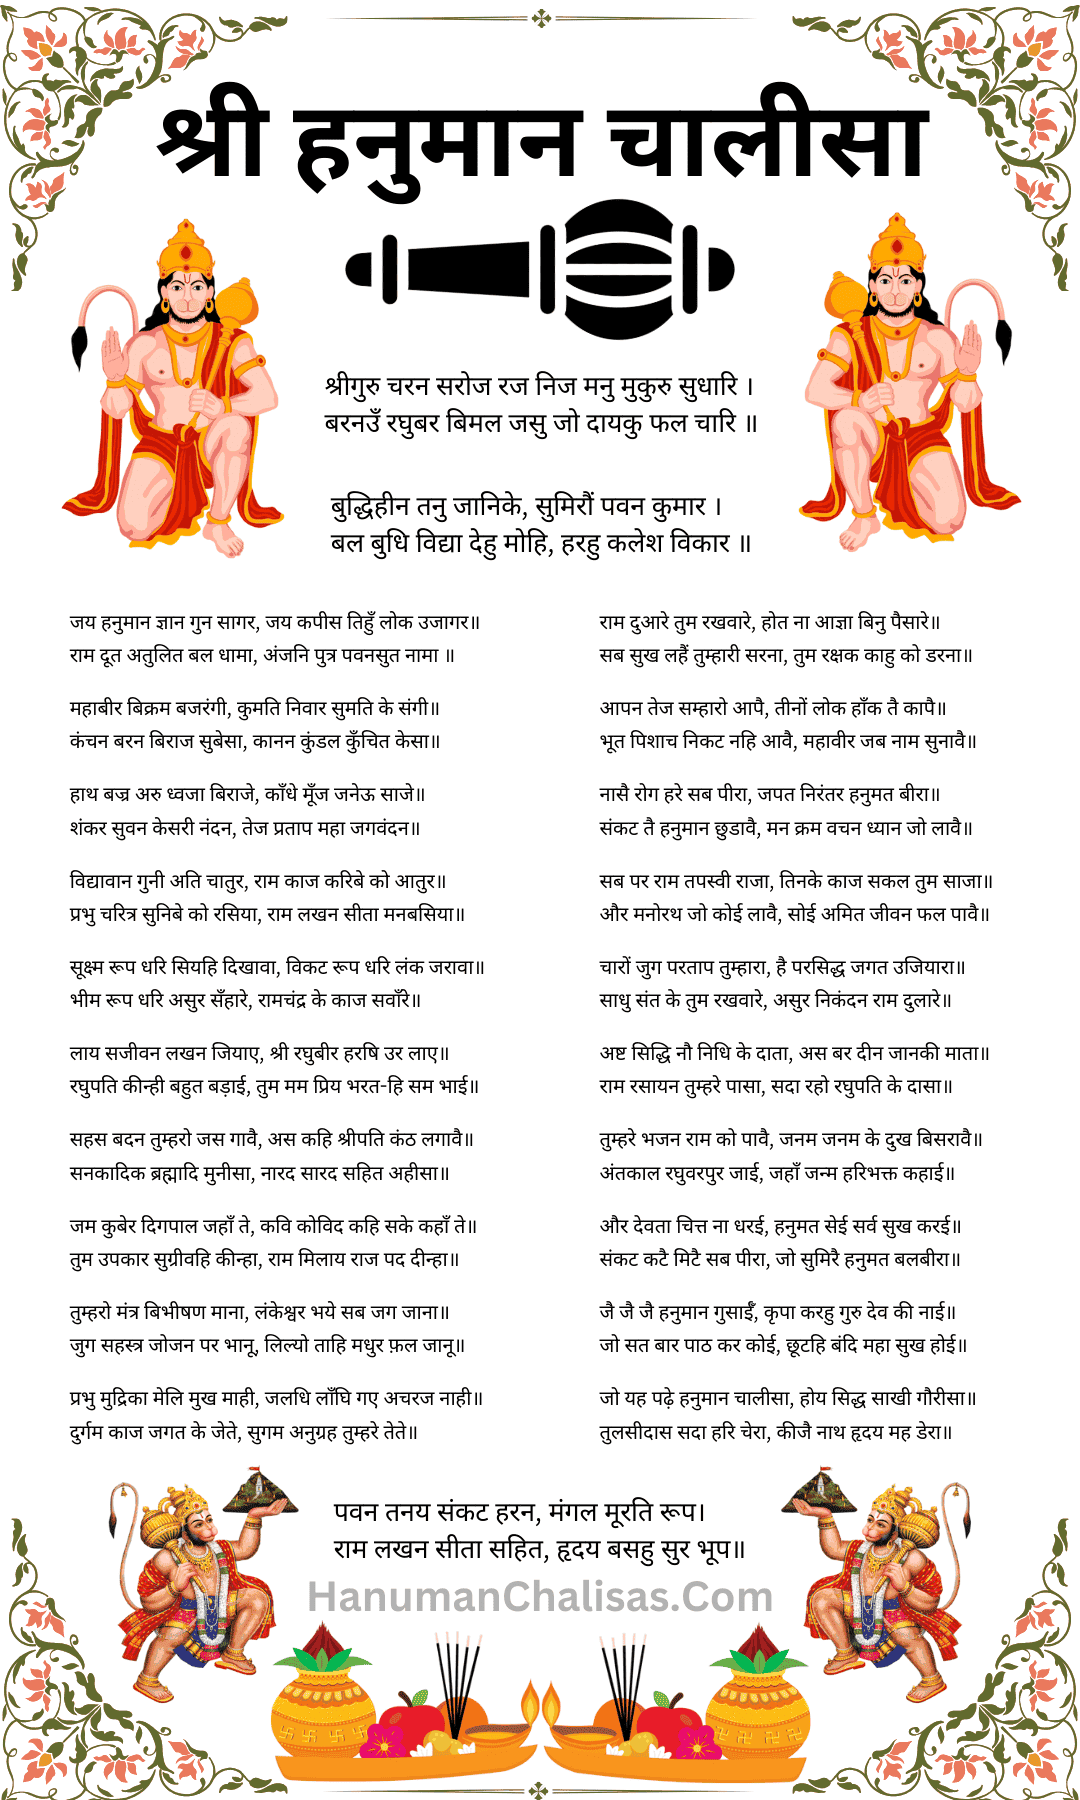 hanuman chalisa pdf, hanuman chalisa pdf hindi, hanuman chalisa hindi, hanuman chalisa